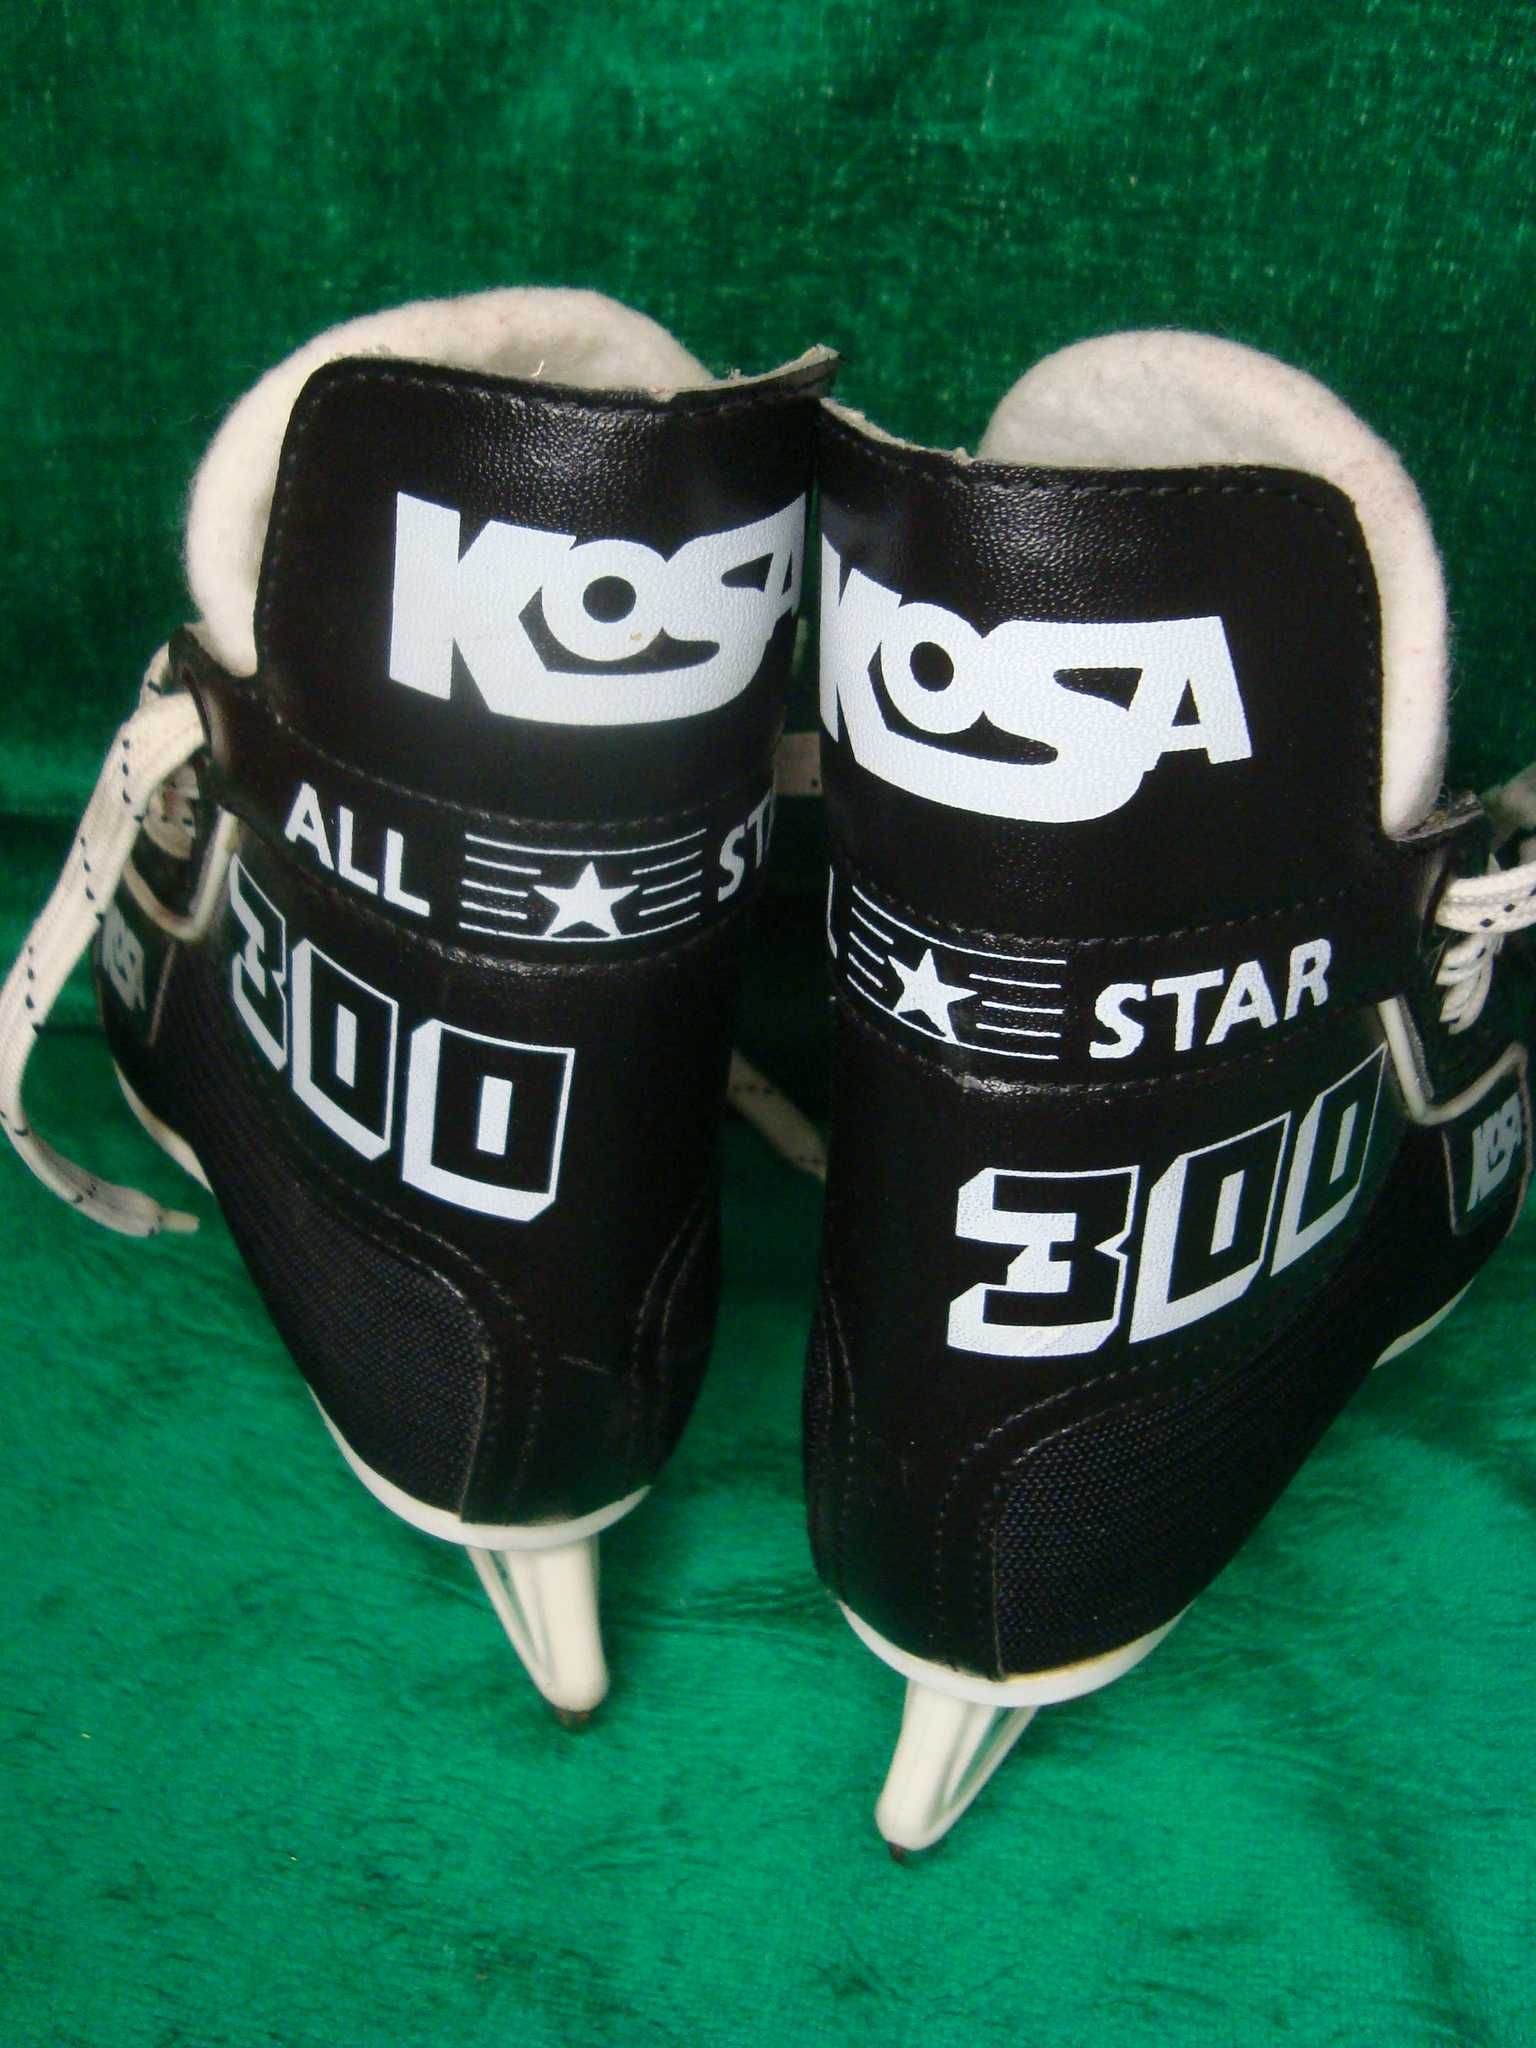 łyżwy hokejowe Kosa model ALL Star  roz 30 -19 cm Super